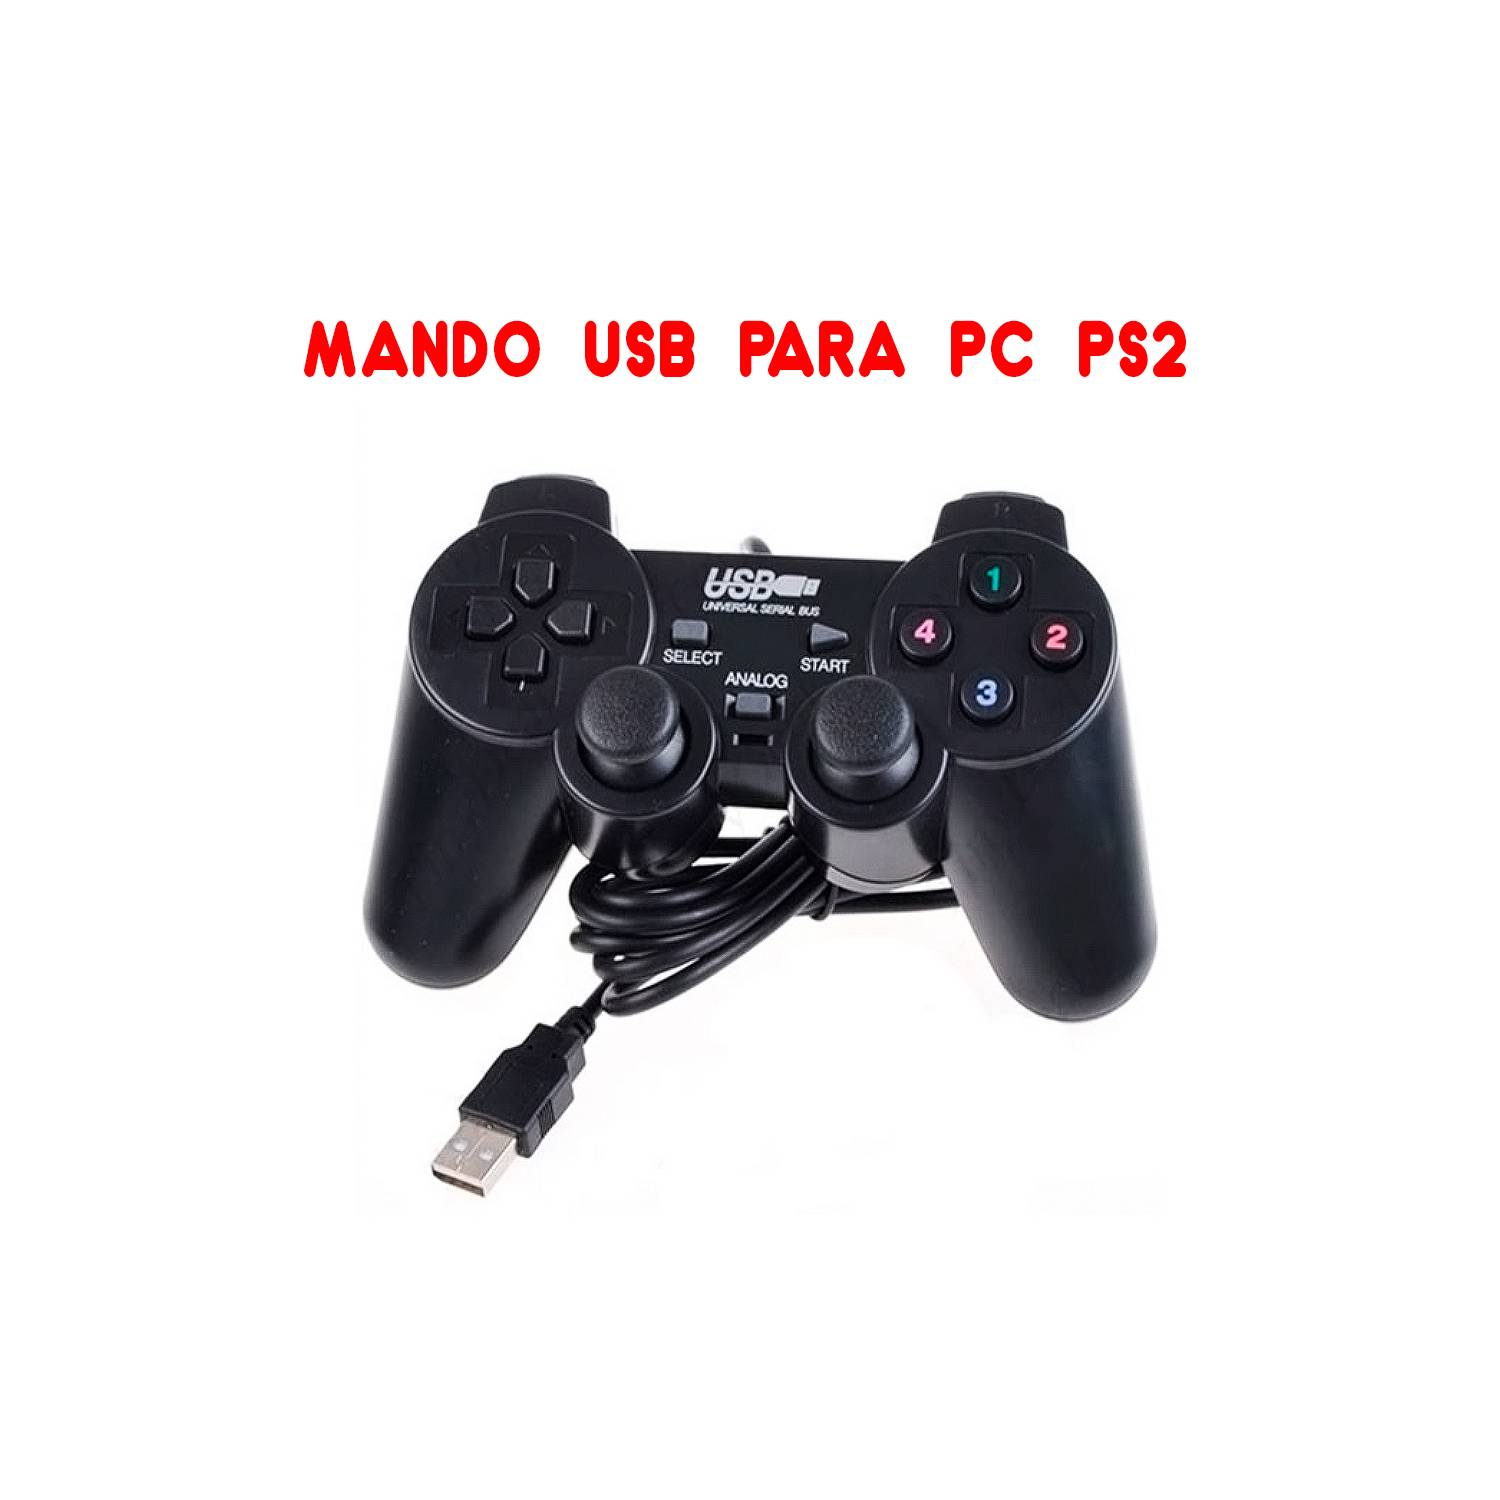 Mando USB para PC y Laptop modelo Play 2 - Control Color Negro IMPORTADO